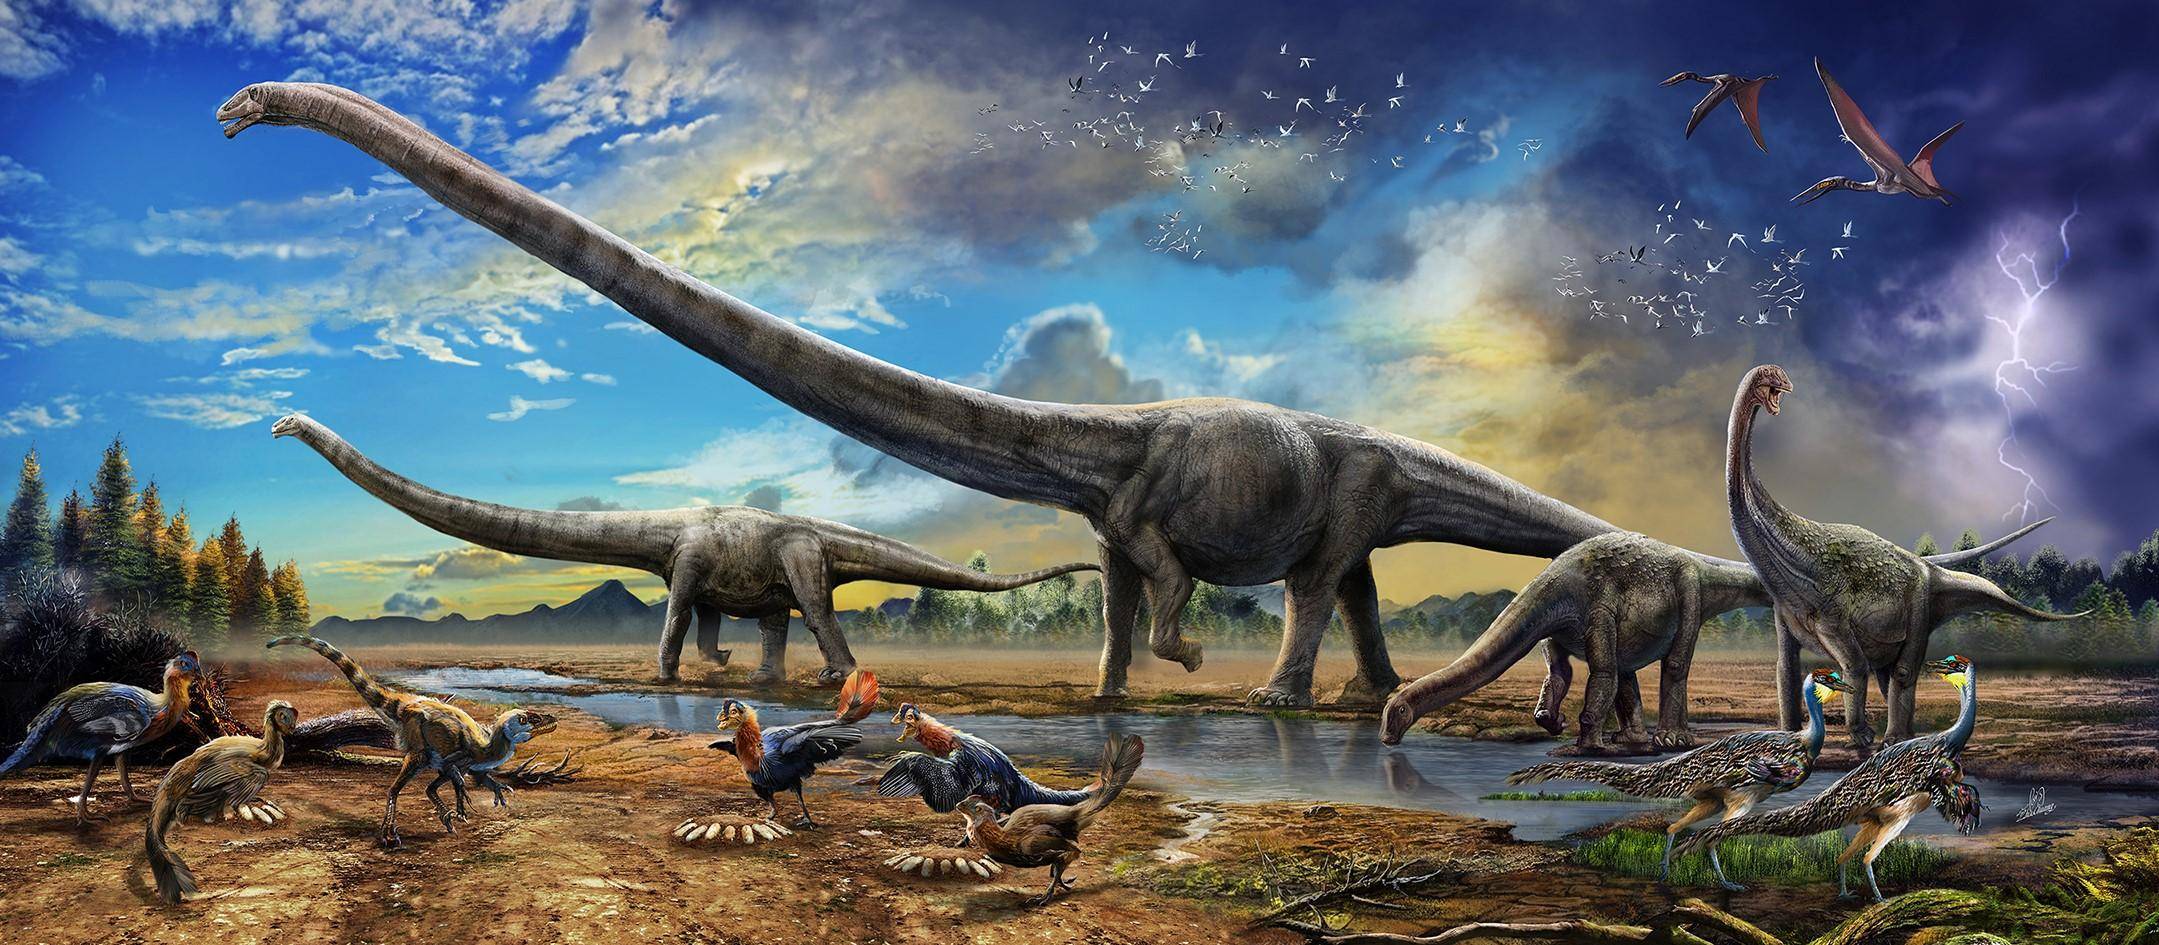 听说过吗远古时代海石湾的恐龙故事